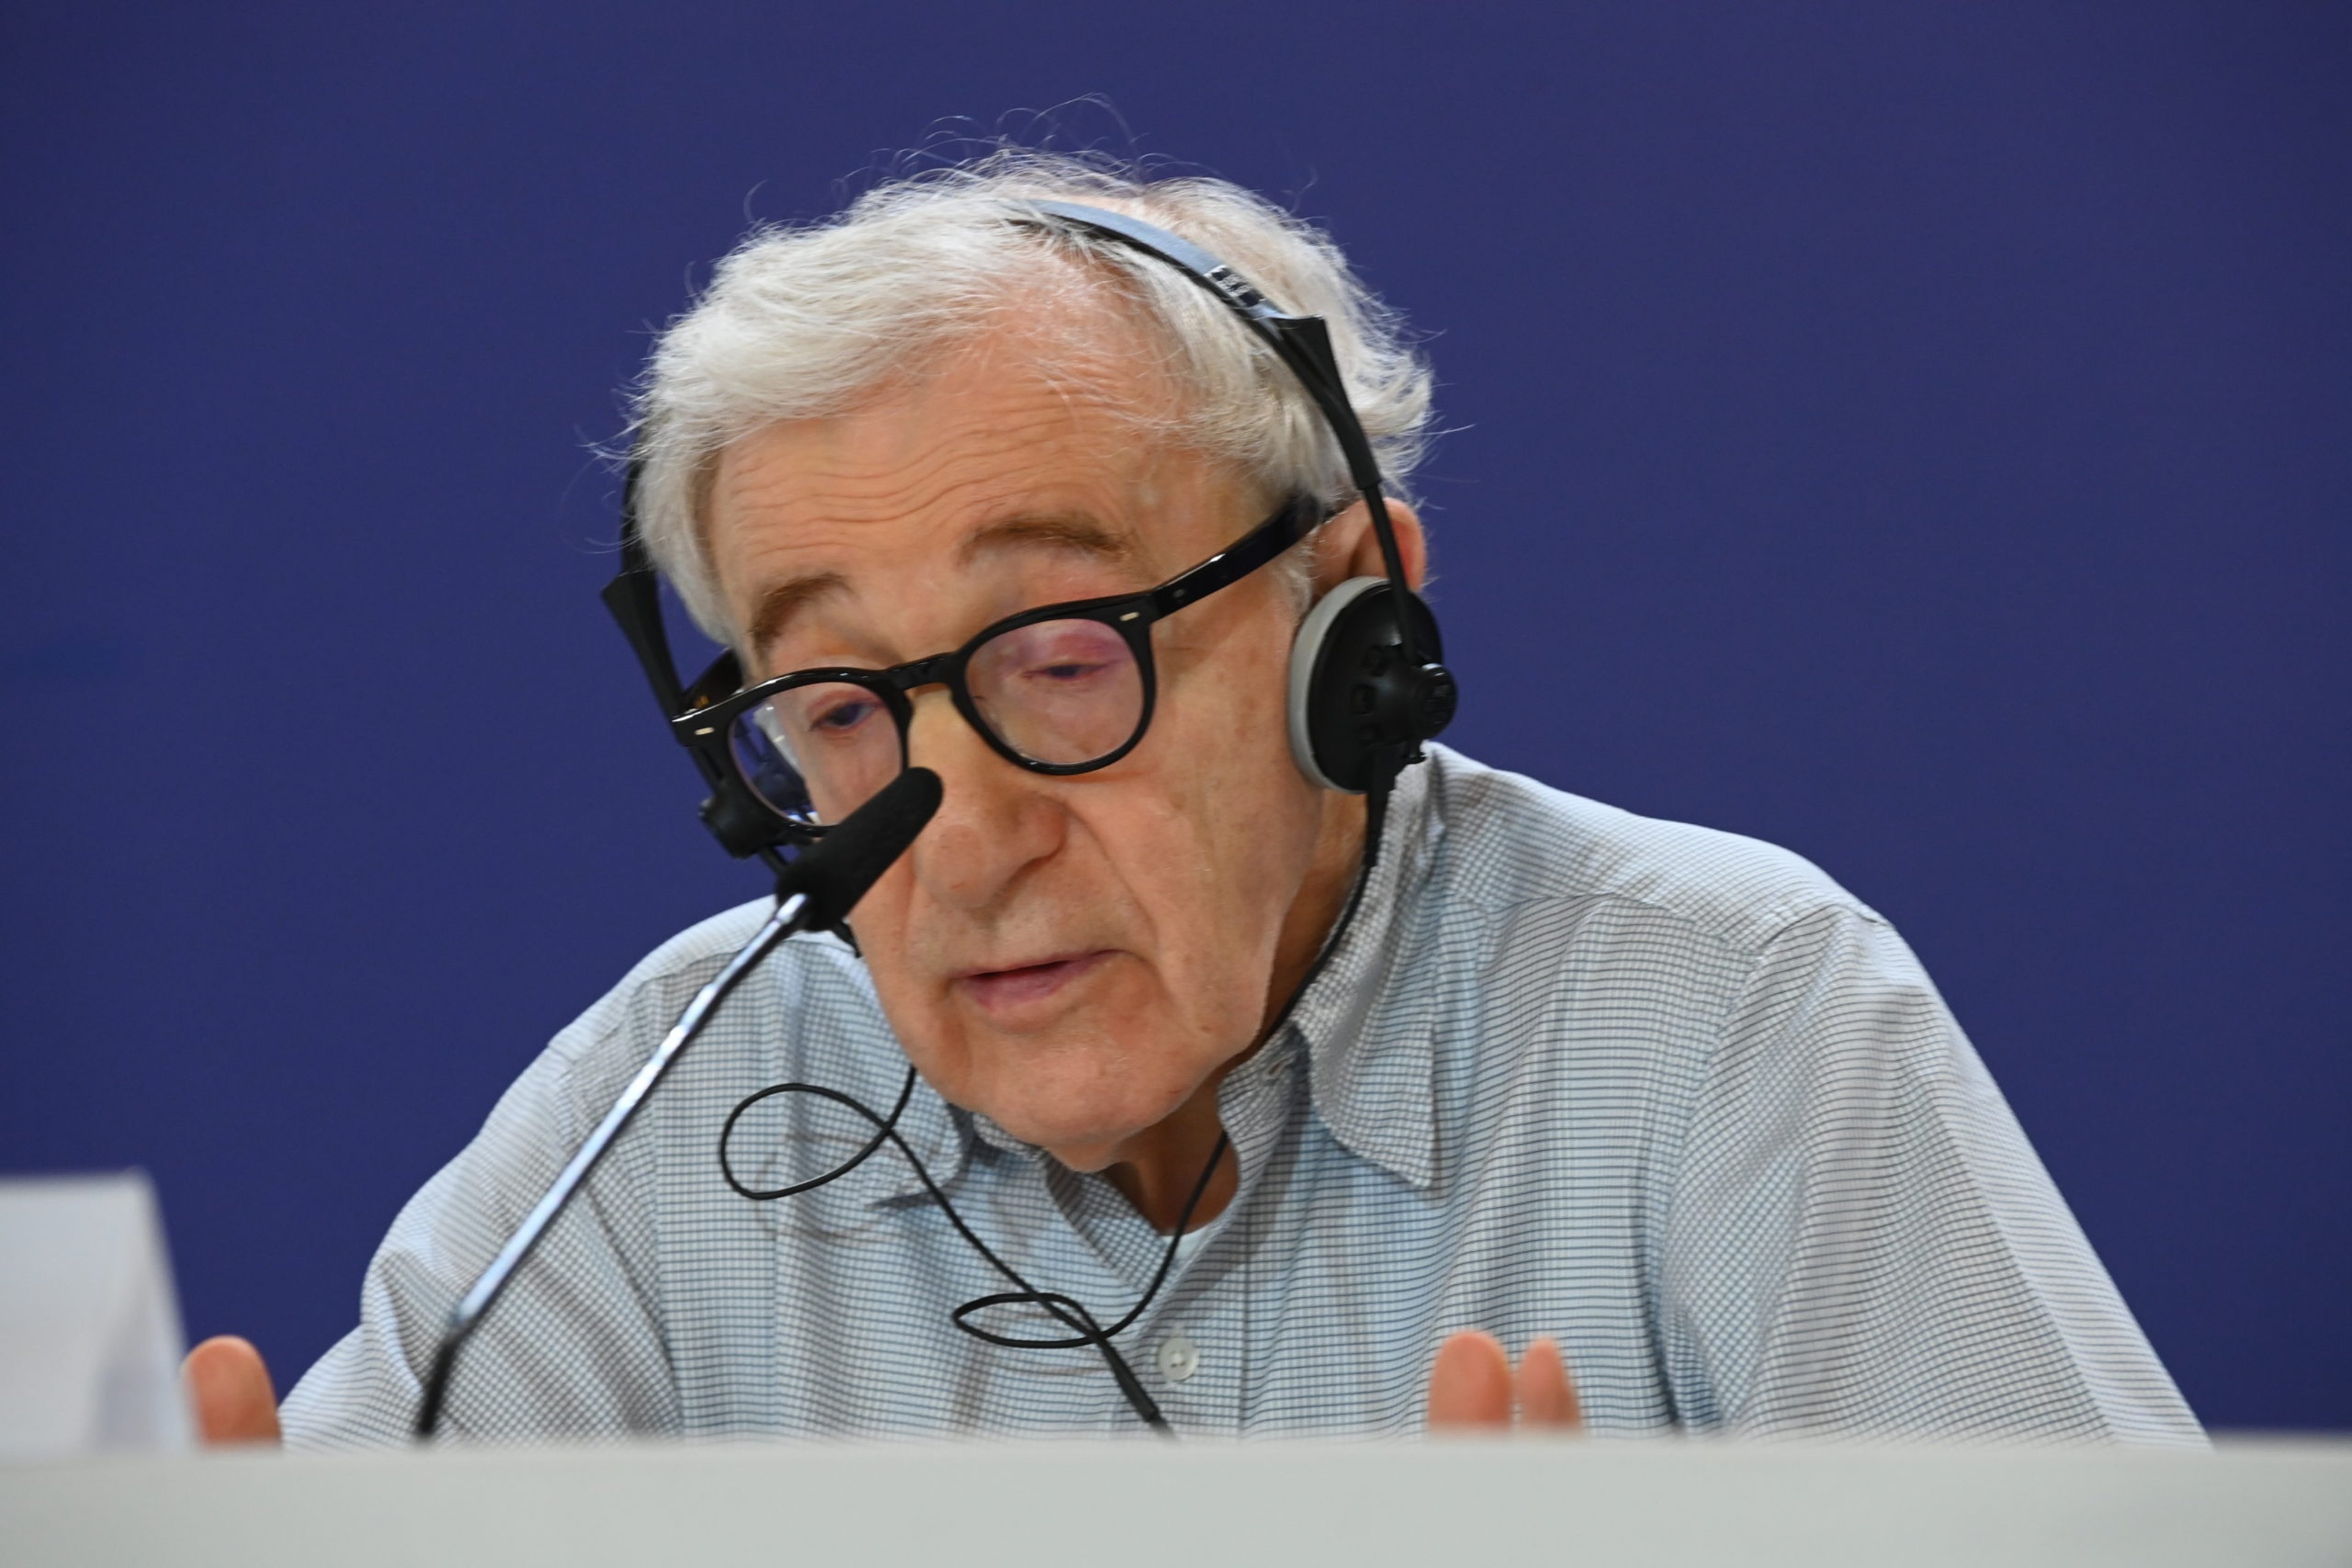 Woody Allen incontra la stampa a Venezia: nuovi film in arrivo?